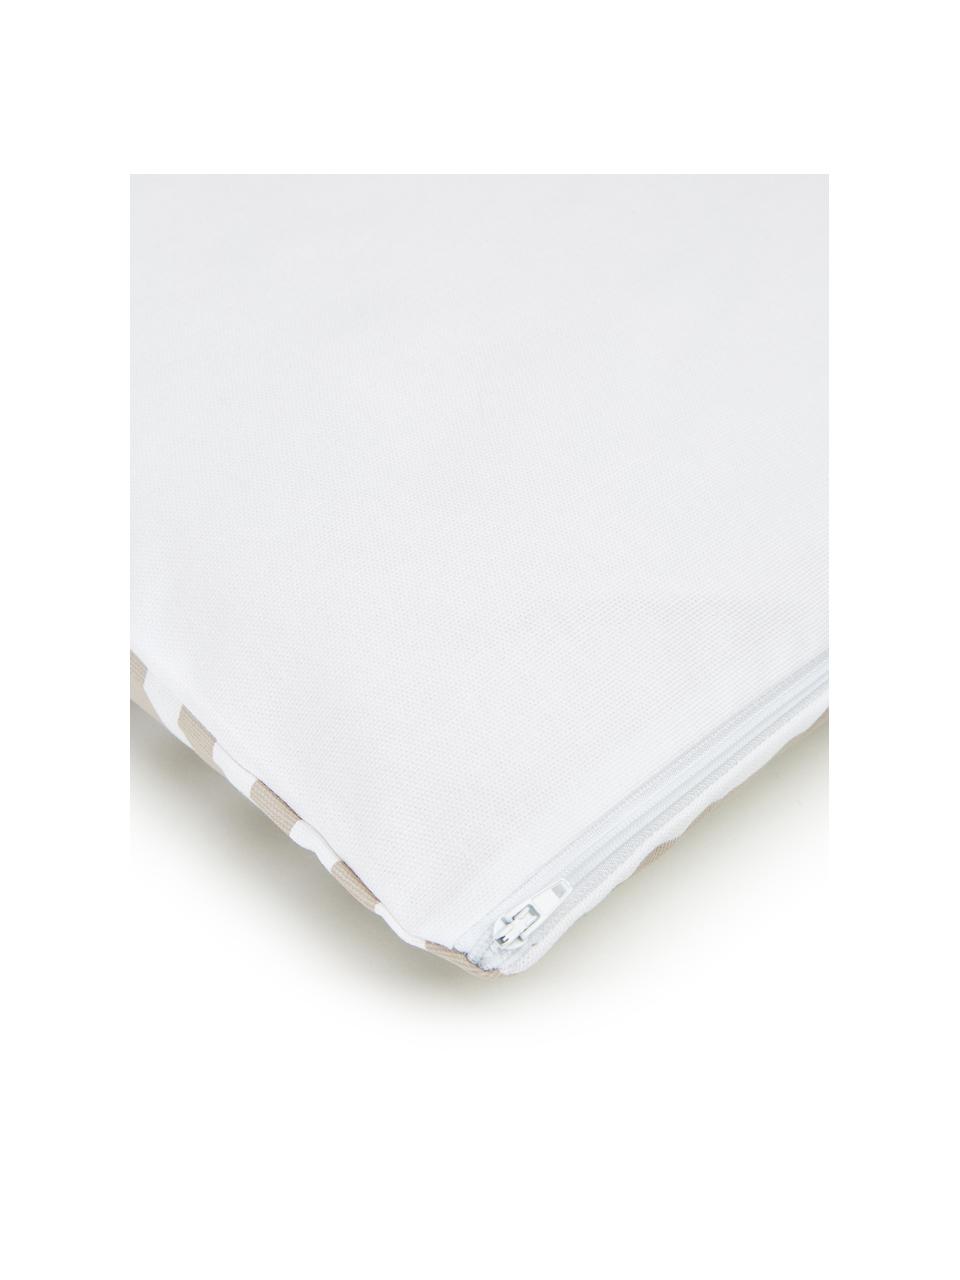 Kissenhülle Ivo Taupe/Weiß mit grafischem Muster, 100% Baumwolle, Weiß,Beige, 45 x 45 cm